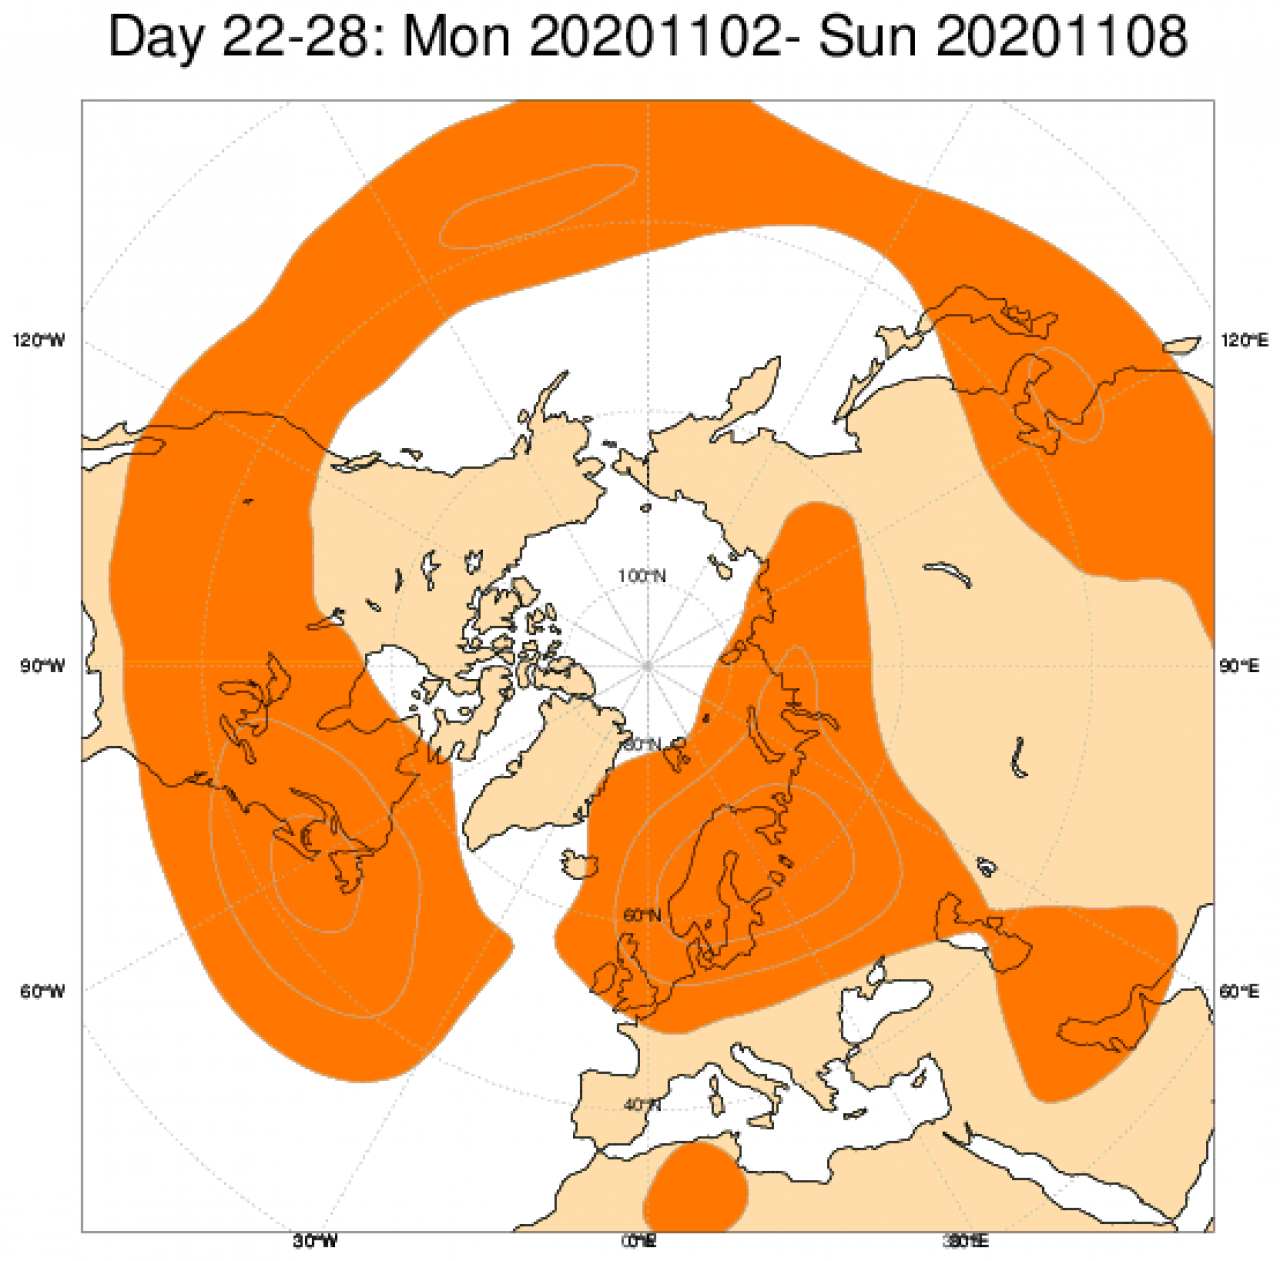  Le anomalie di geopotenziale a 500hPa, secondo il modello ECMWF, mediate nel periodo 2 - 8 novembre